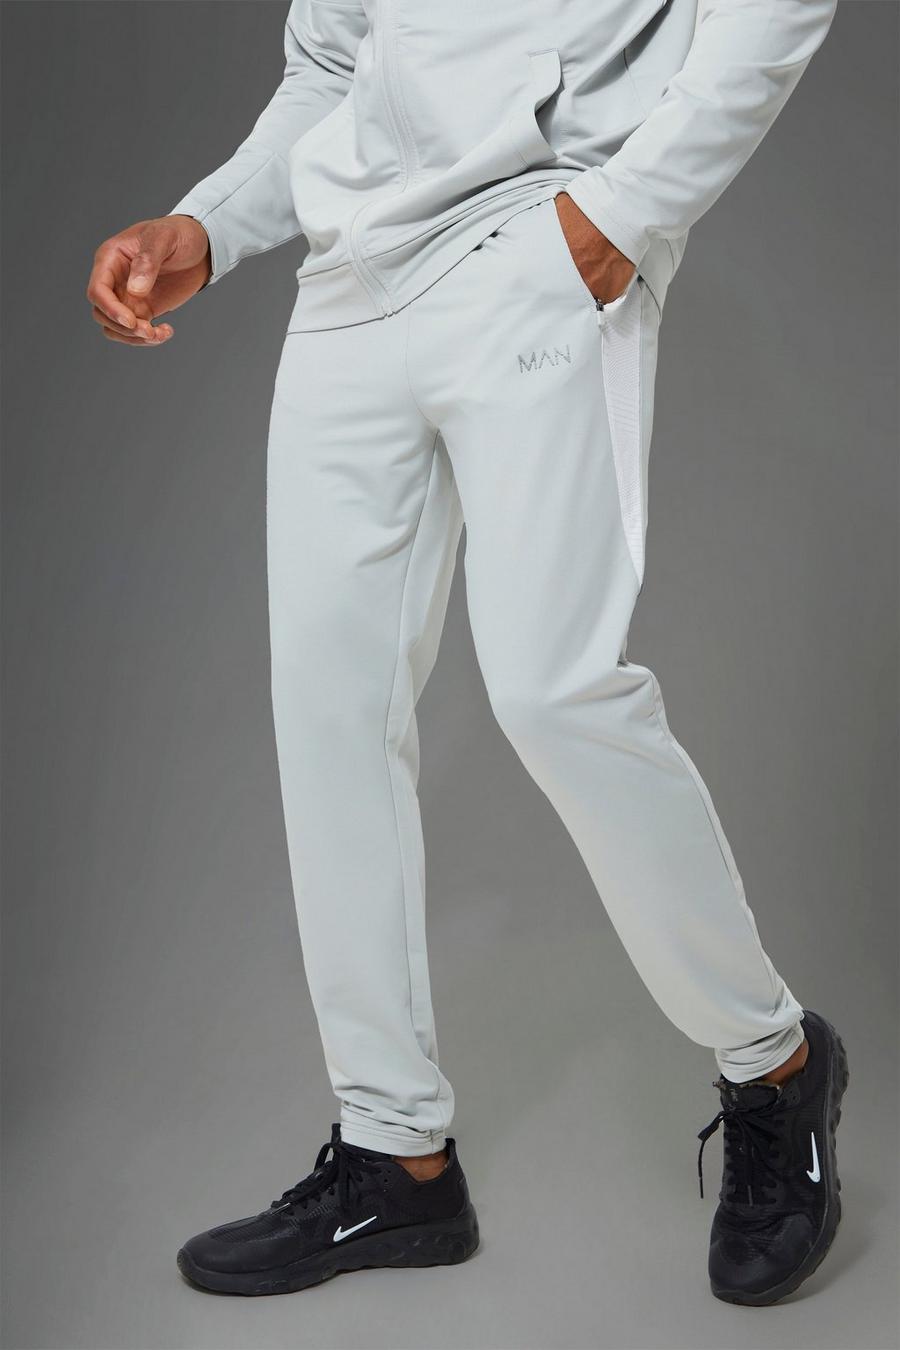 אפור grey מכנסי ריצה ספורטיביים לחדר הכושר עם פאנל ג'קארד, מסדרת Man  image number 1